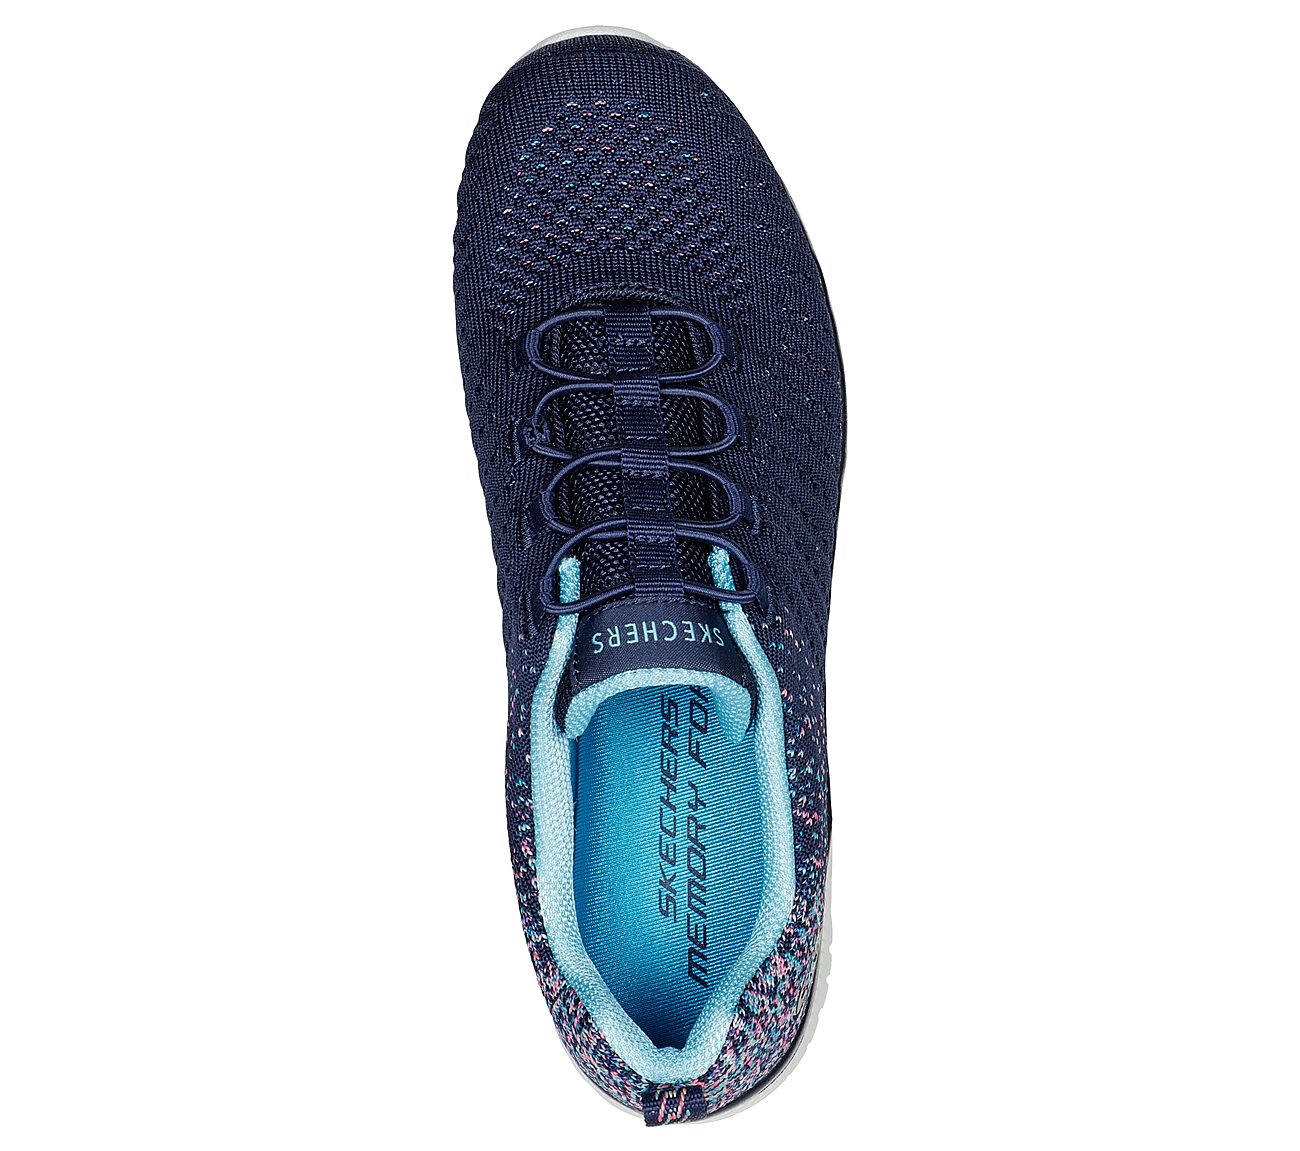 VIRTUE, NAVY/BLUE Footwear Top View